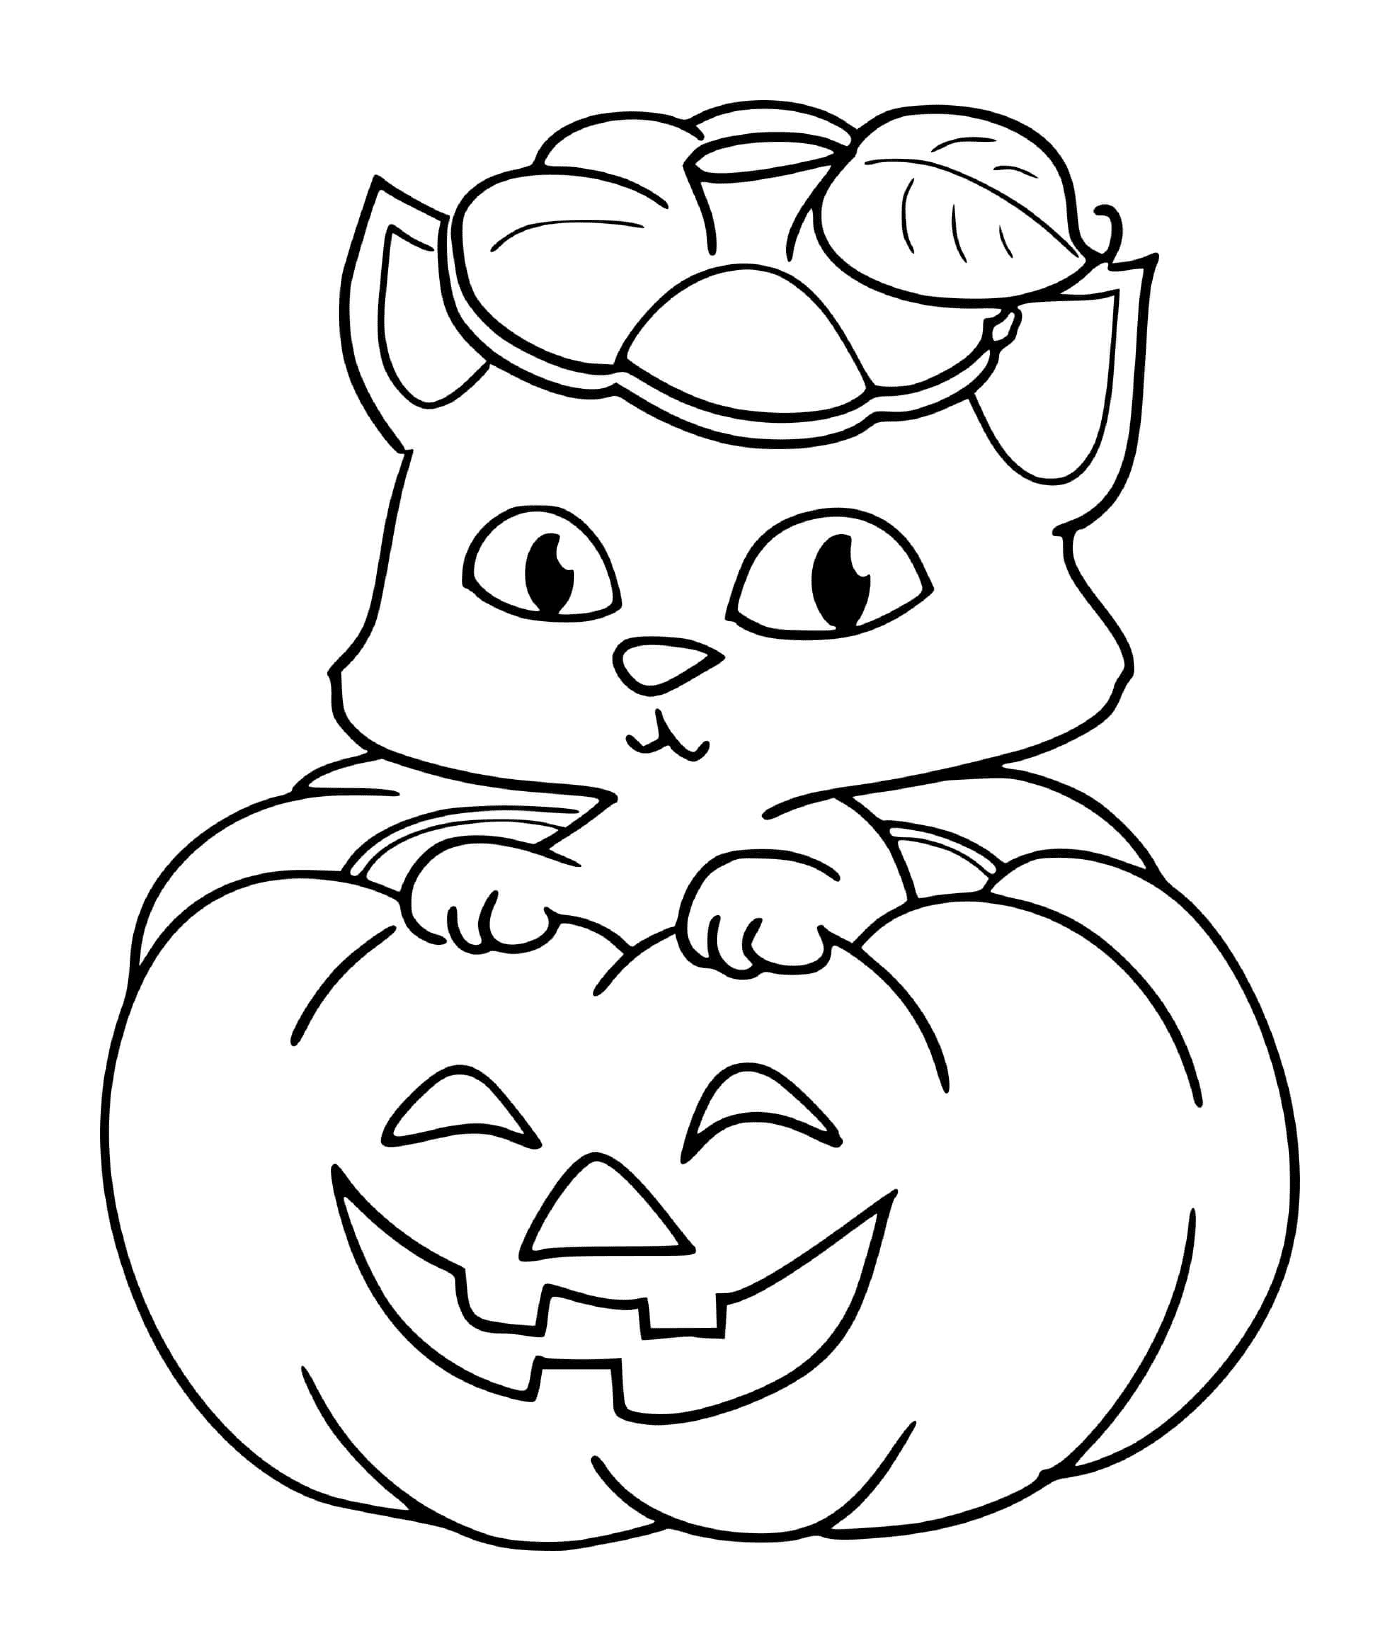  A cat in a pumpkin for Halloween 